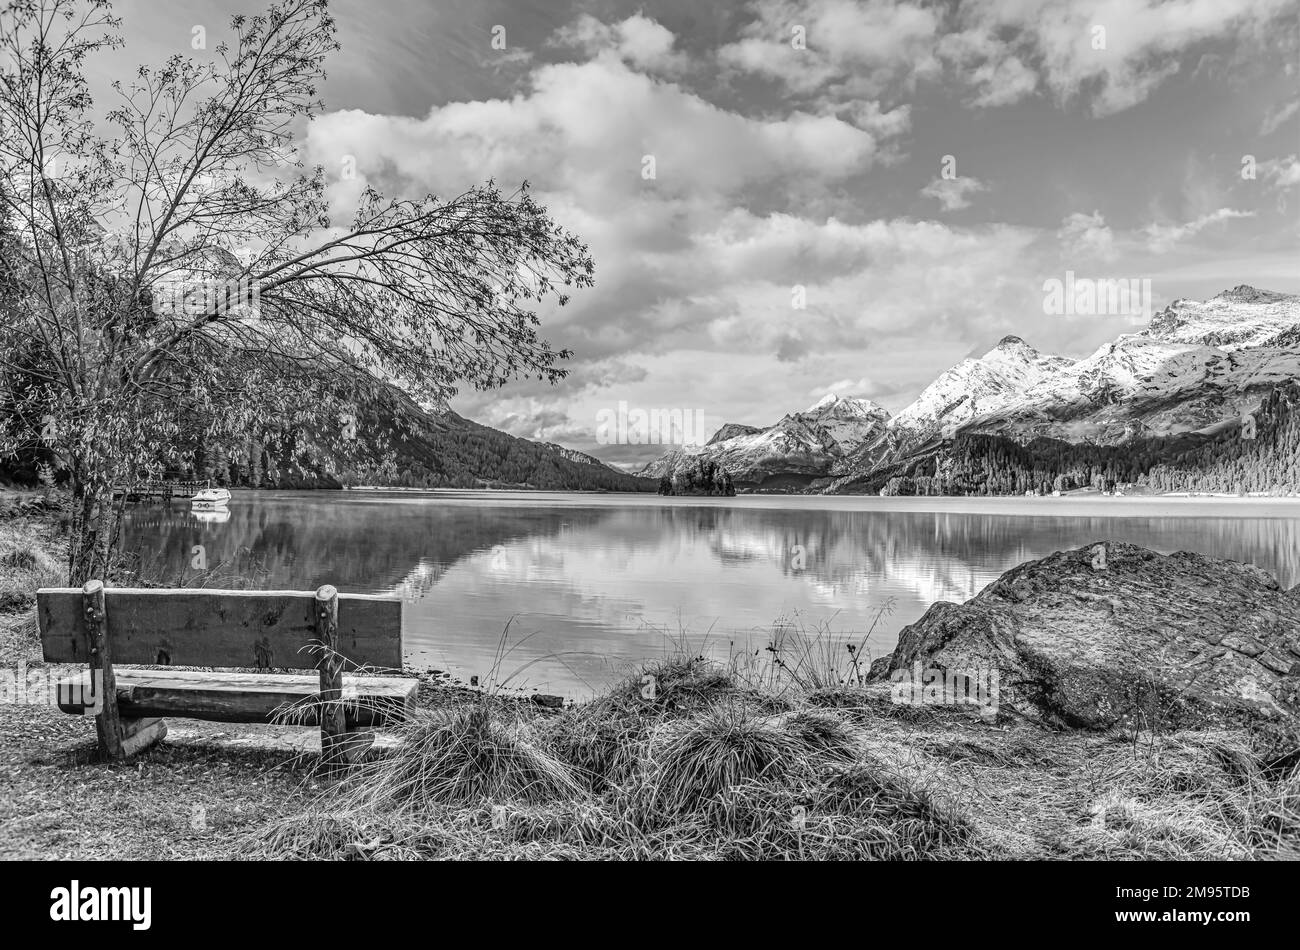 Banc de parc dans un paysage d'automne au lac Sils, Engadine, Suisse avec Piz Margna dans le fond en noir et blanc Banque D'Images